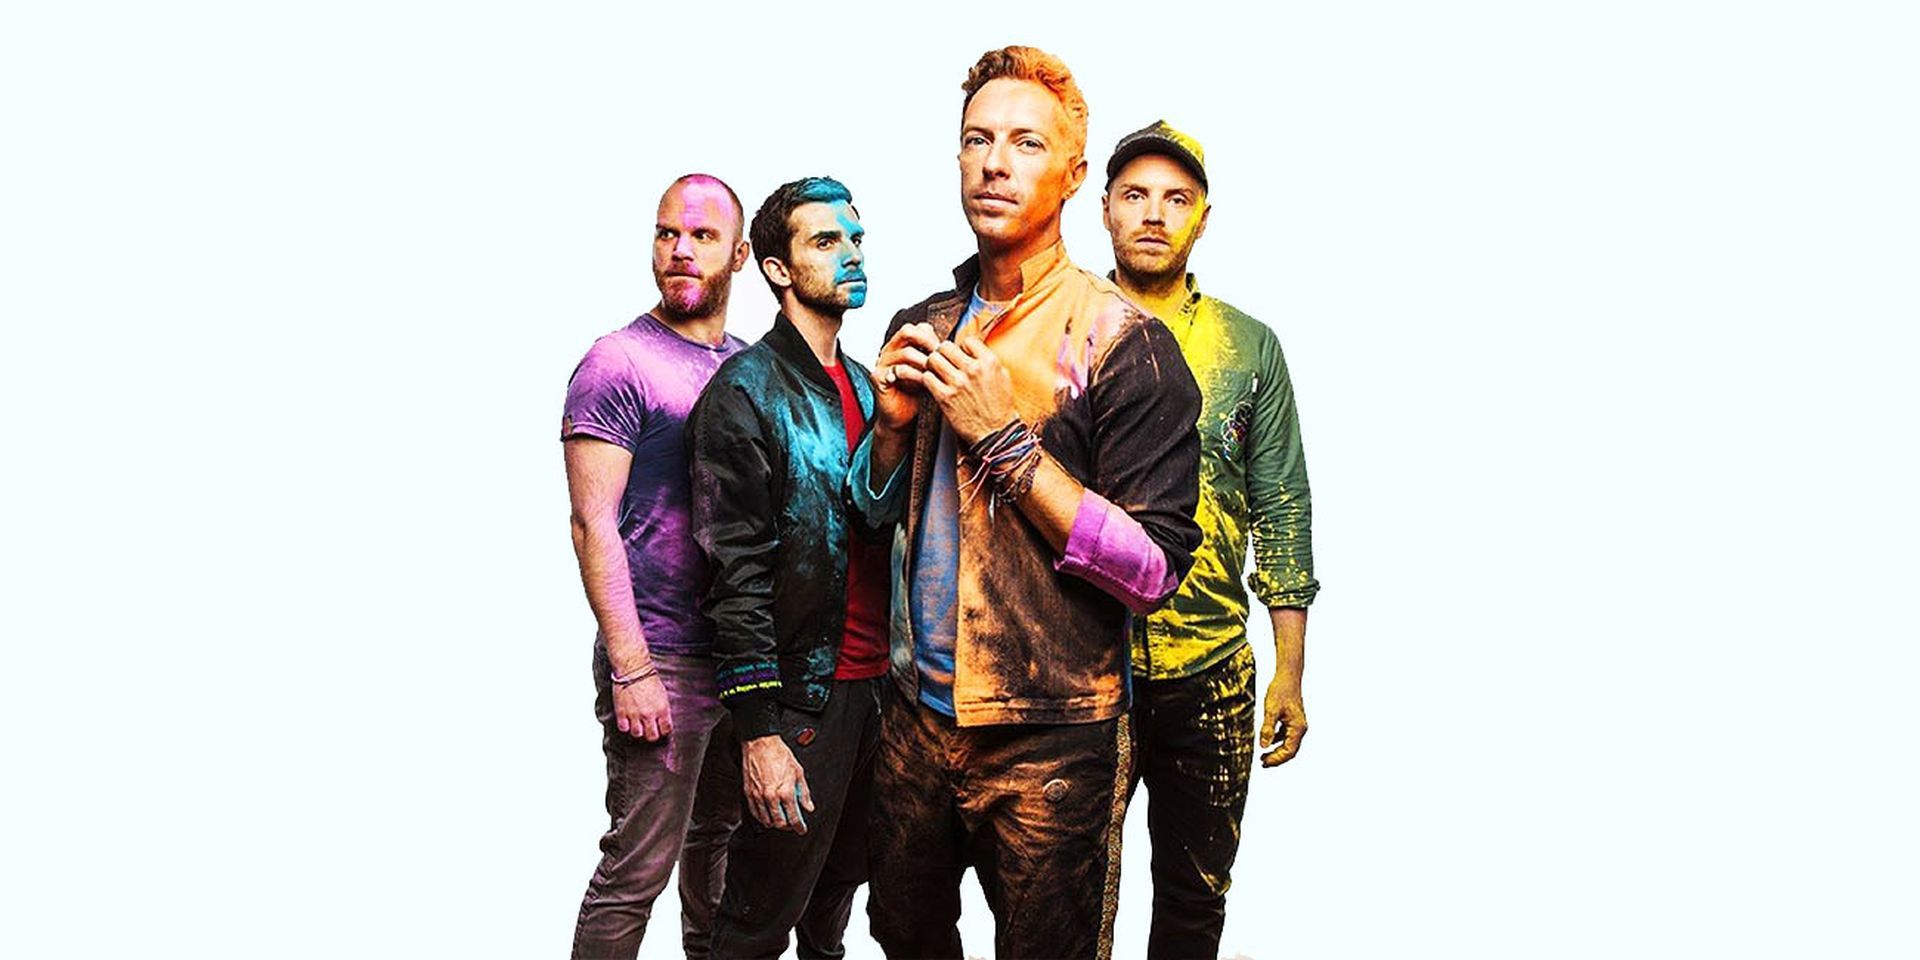 Preventa de Coldplay Dublín: cómo conseguir entradas de preventa de Coldplay